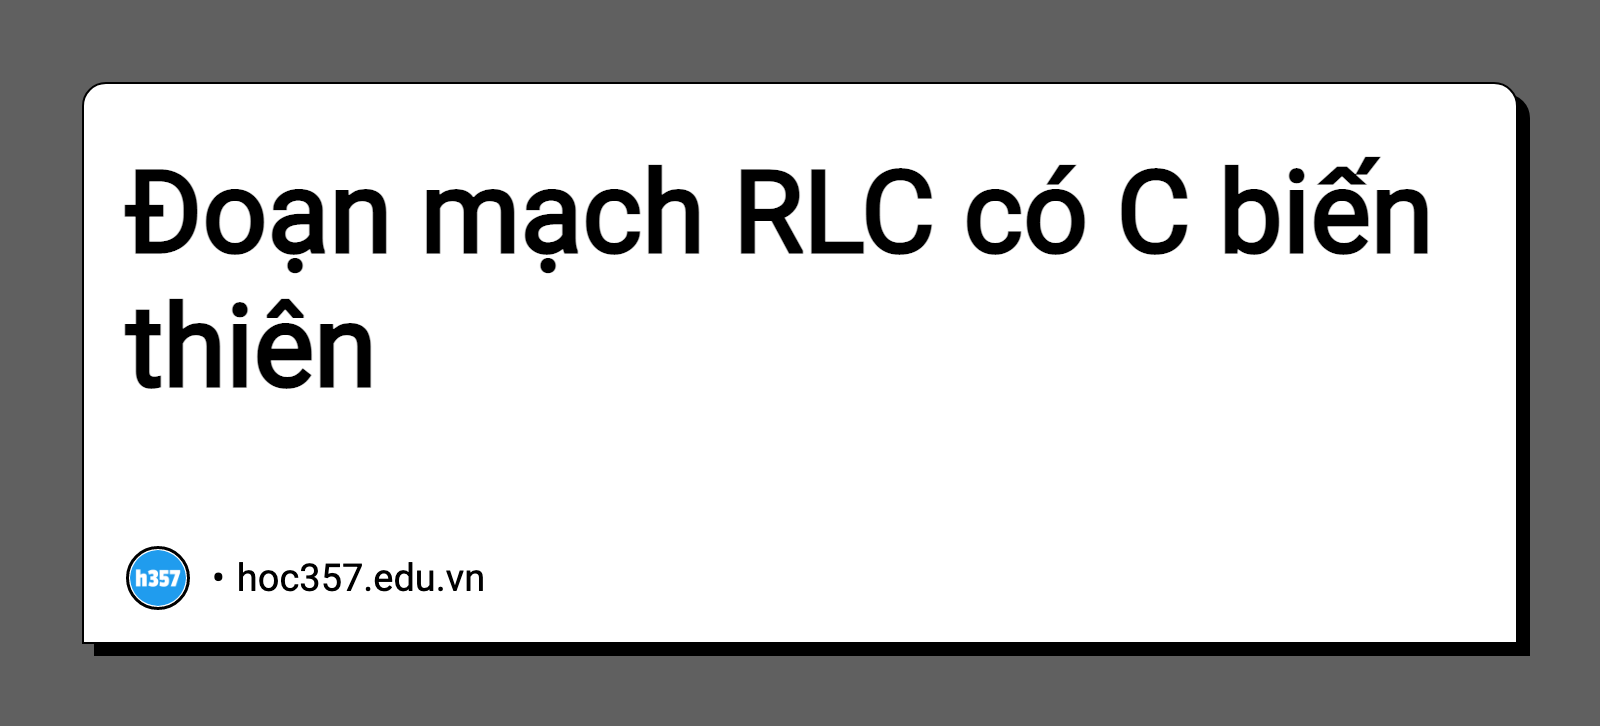 Hình minh họa Đoạn mạch RLC có C biến thiên